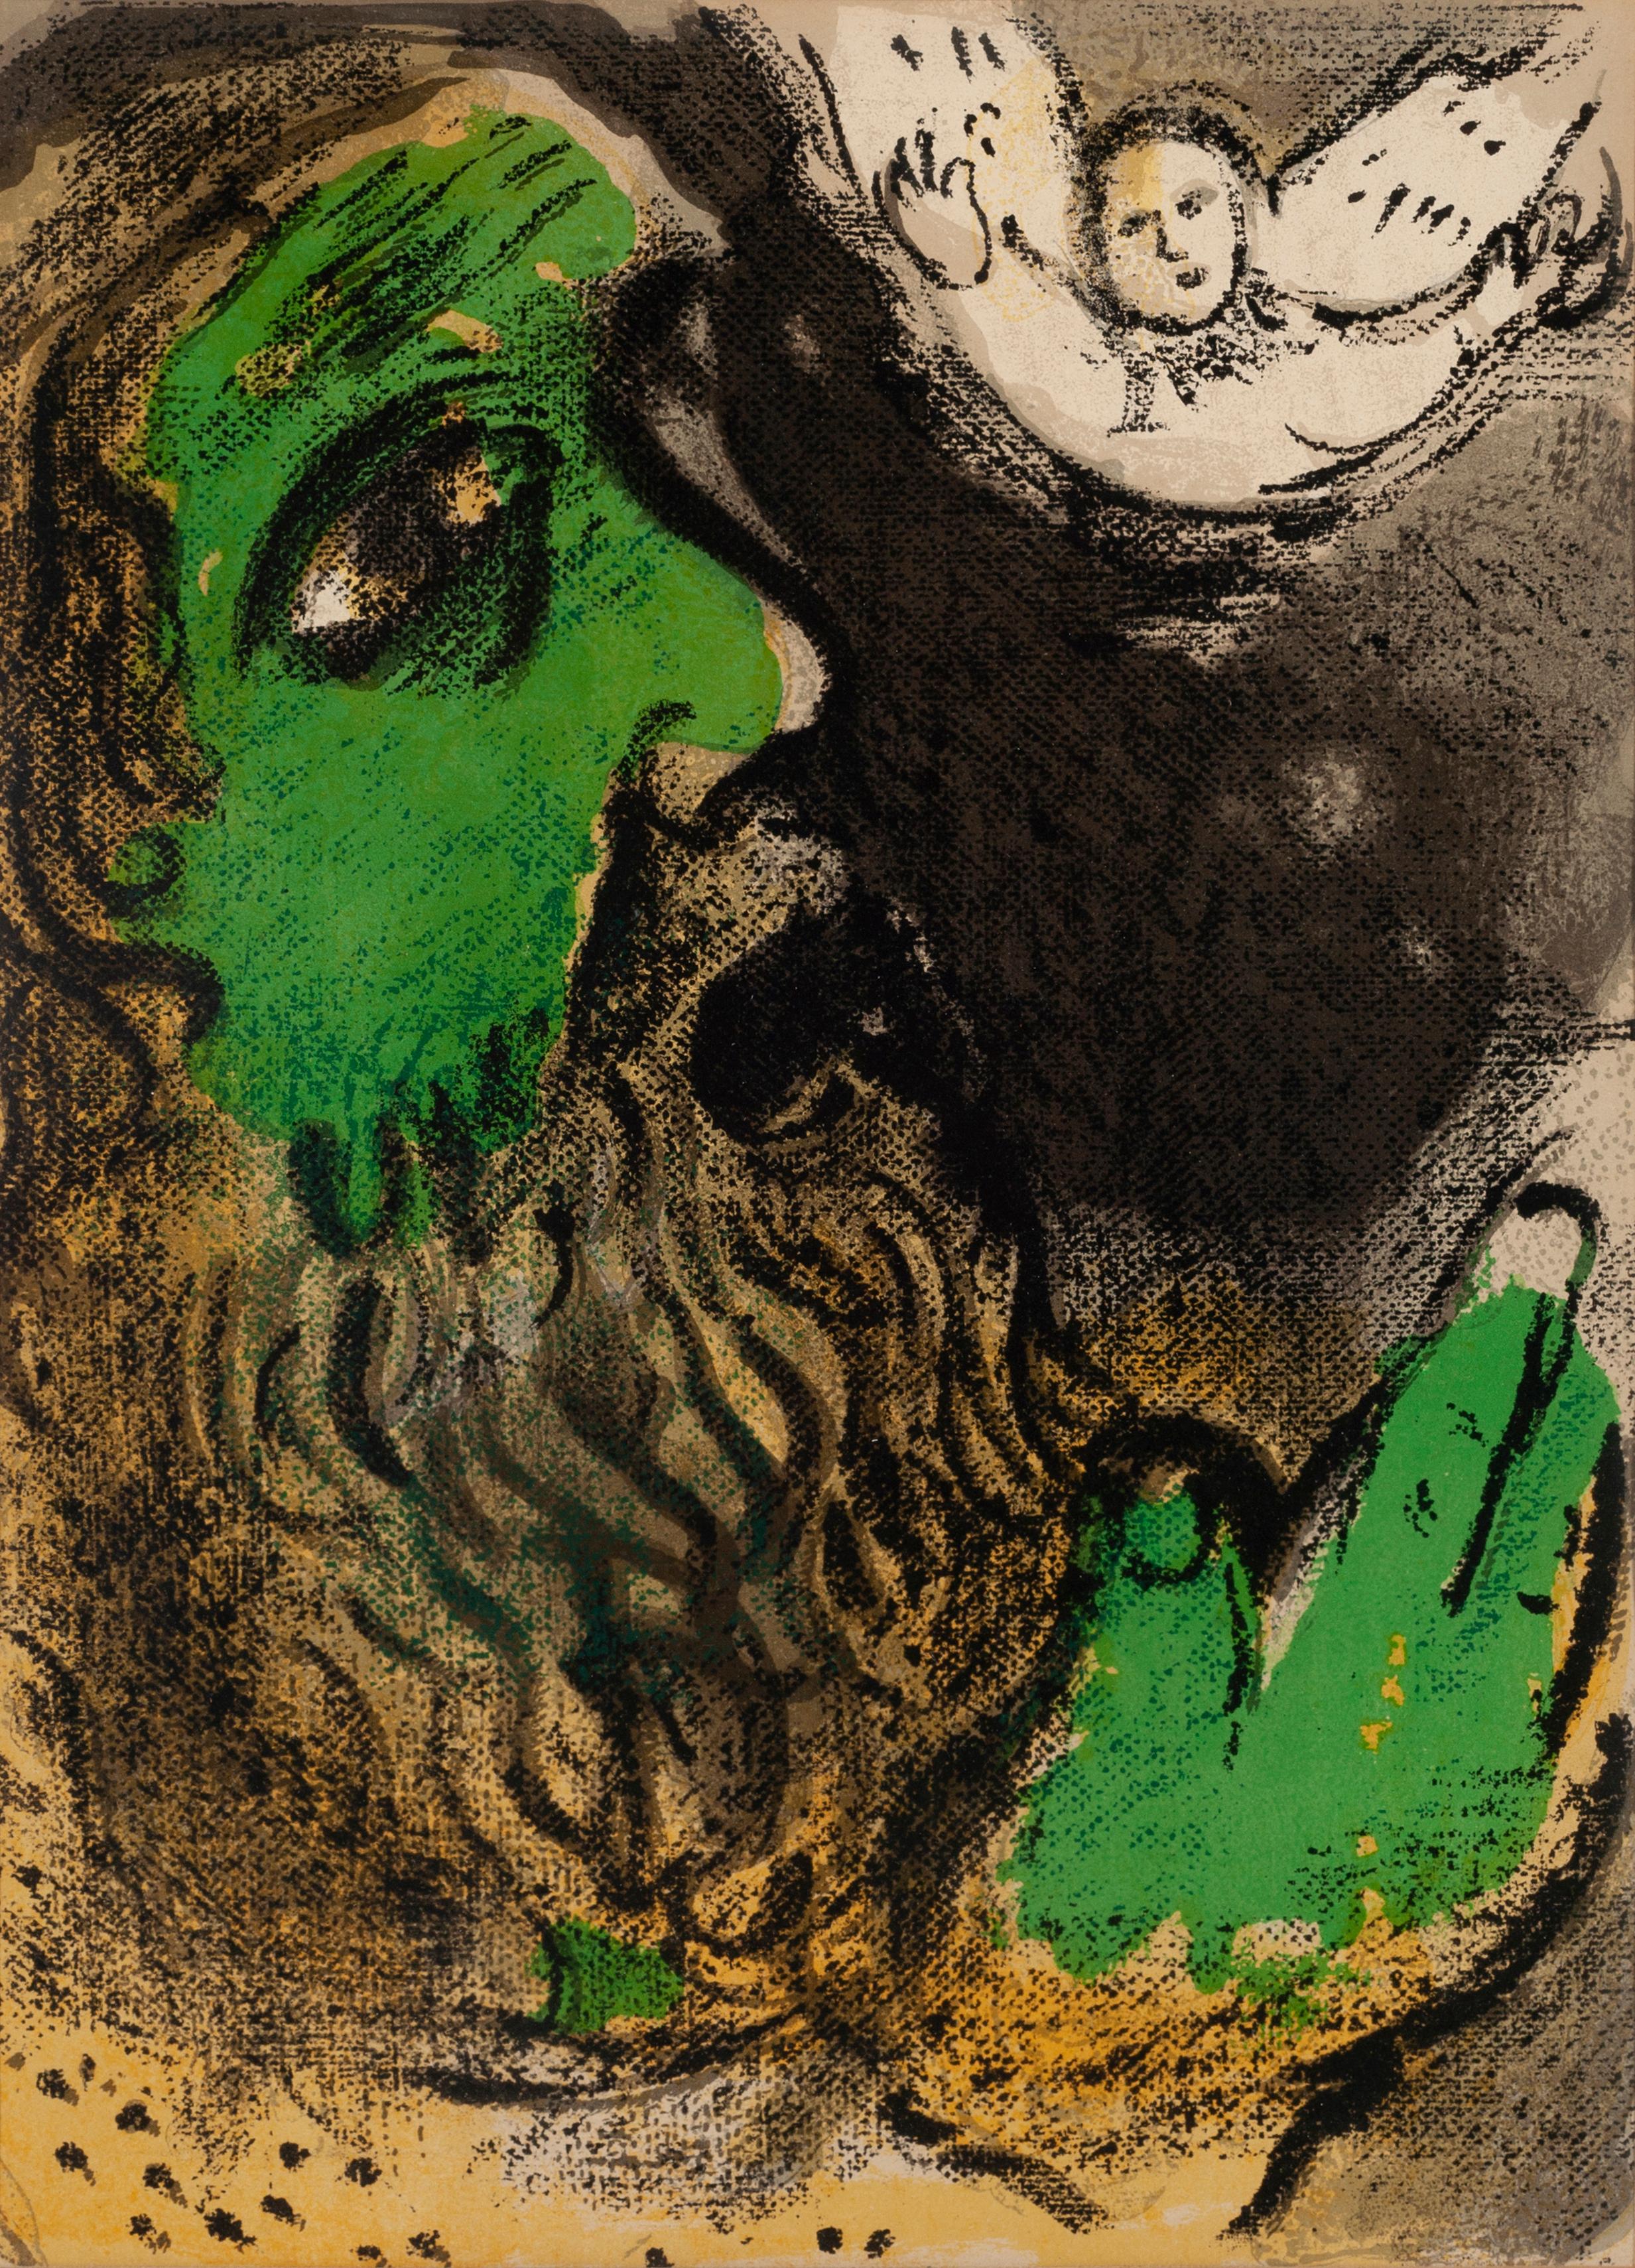 L'emploi dans la prière - Print de Marc Chagall